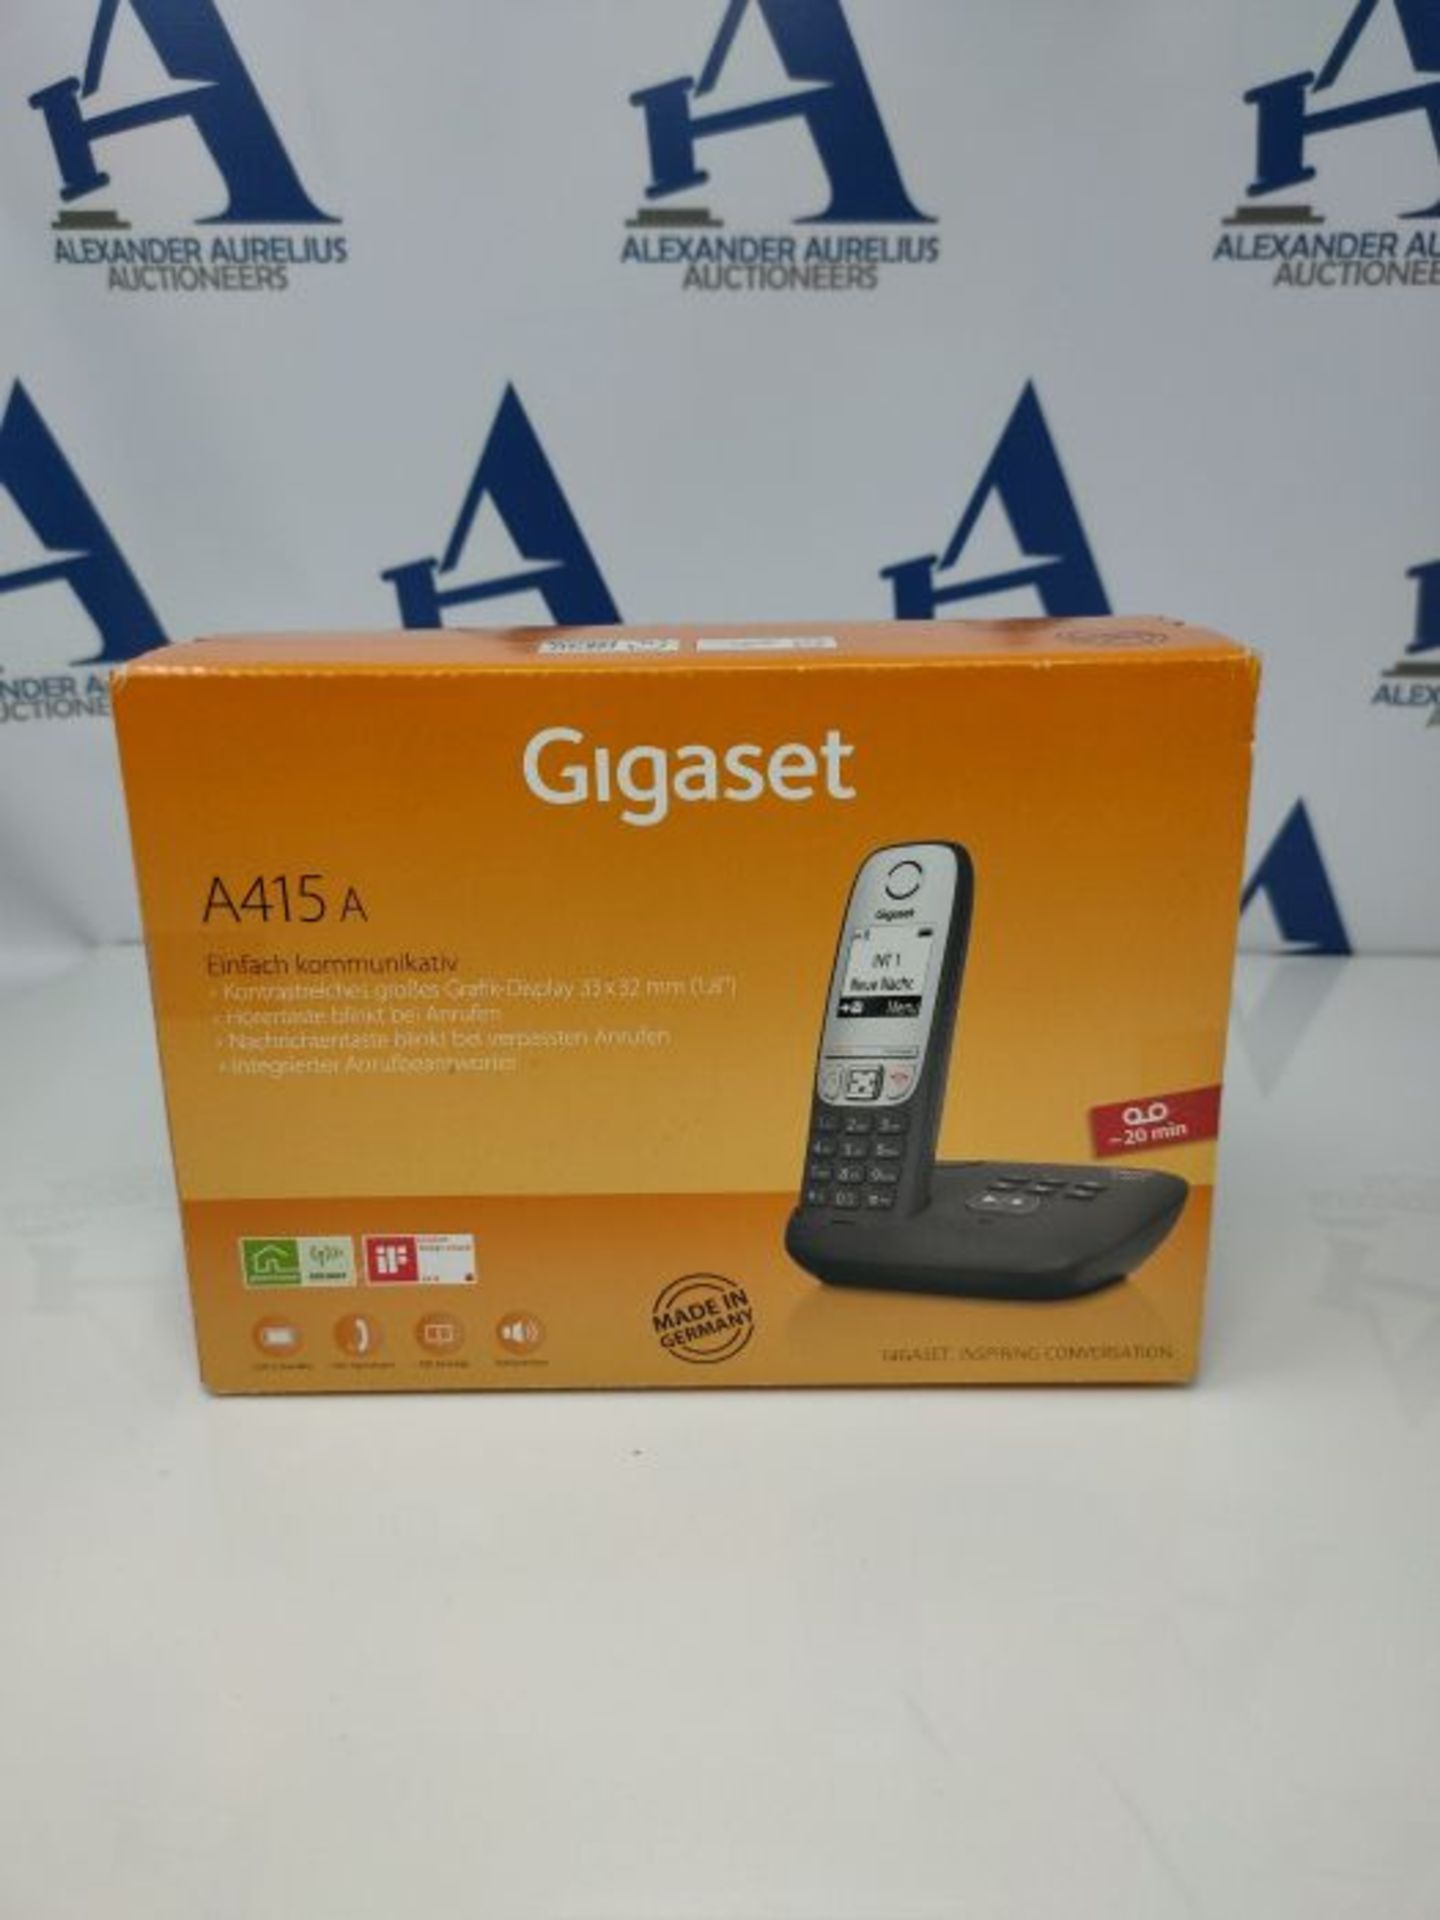 Gigaset A415A, Schnurloses Telefon DECT mit Anrufbeantworter, Freisprechfunktion, Kurz